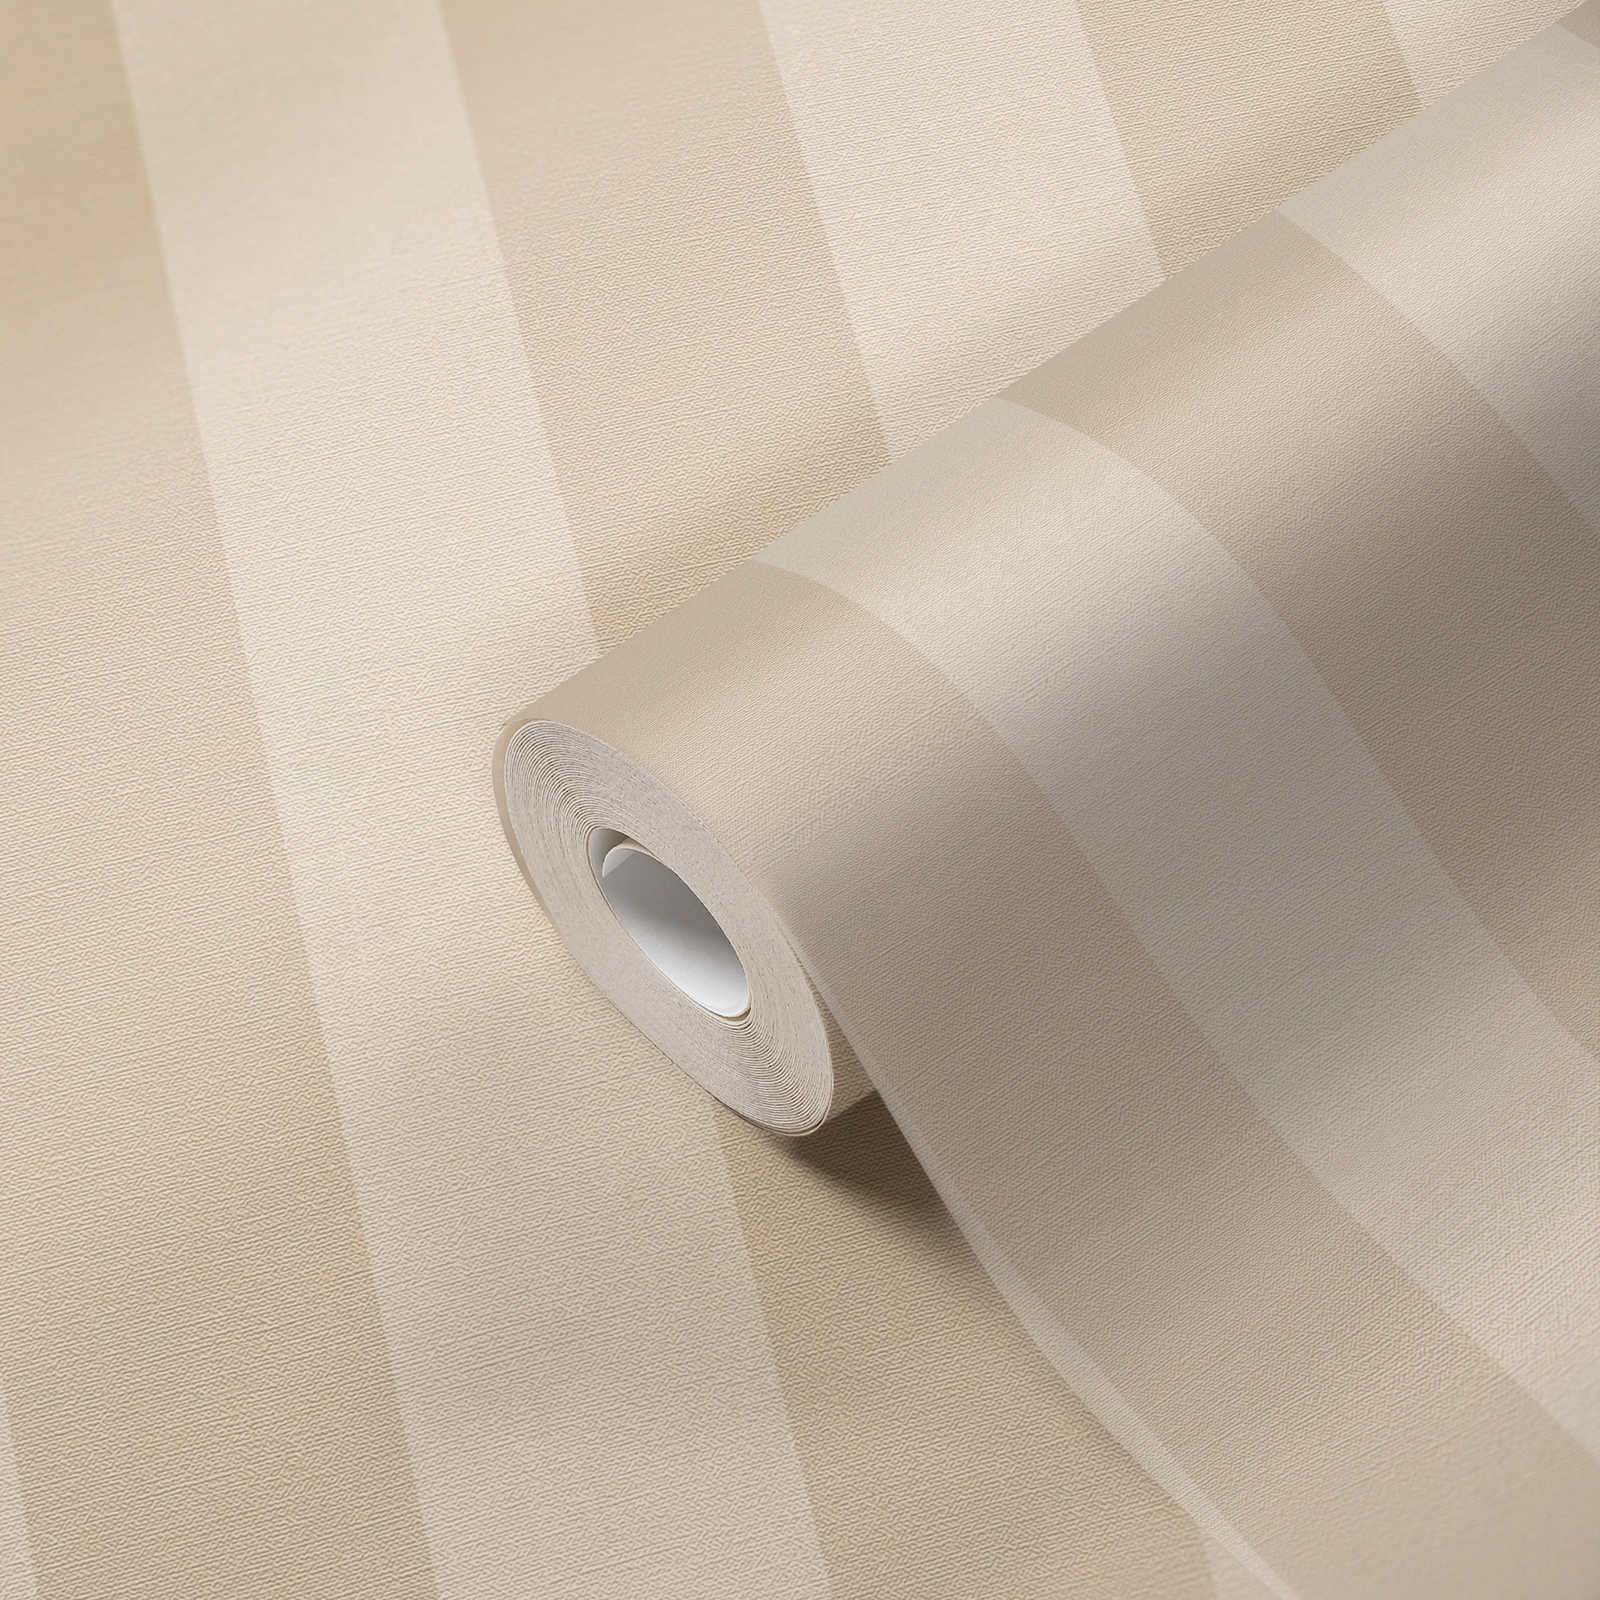             Papel pintado no tejido con rayas y aspecto de lino Sin PVC - beige, blanco
        